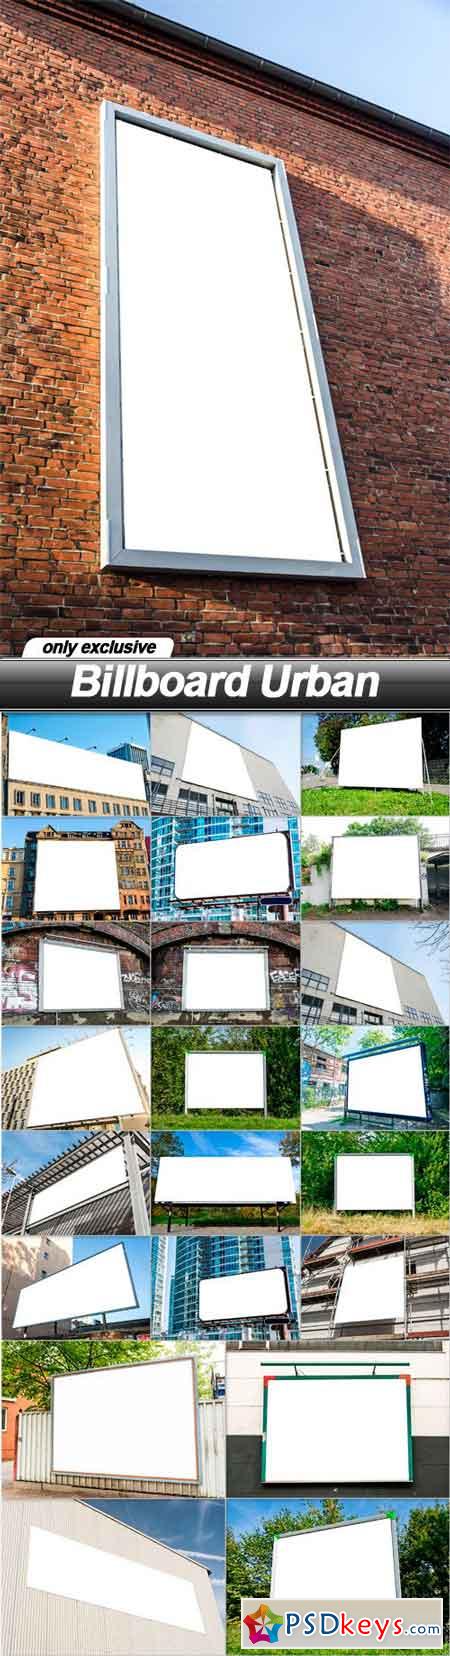 Billboard Urban - 23 UHQ JPEG